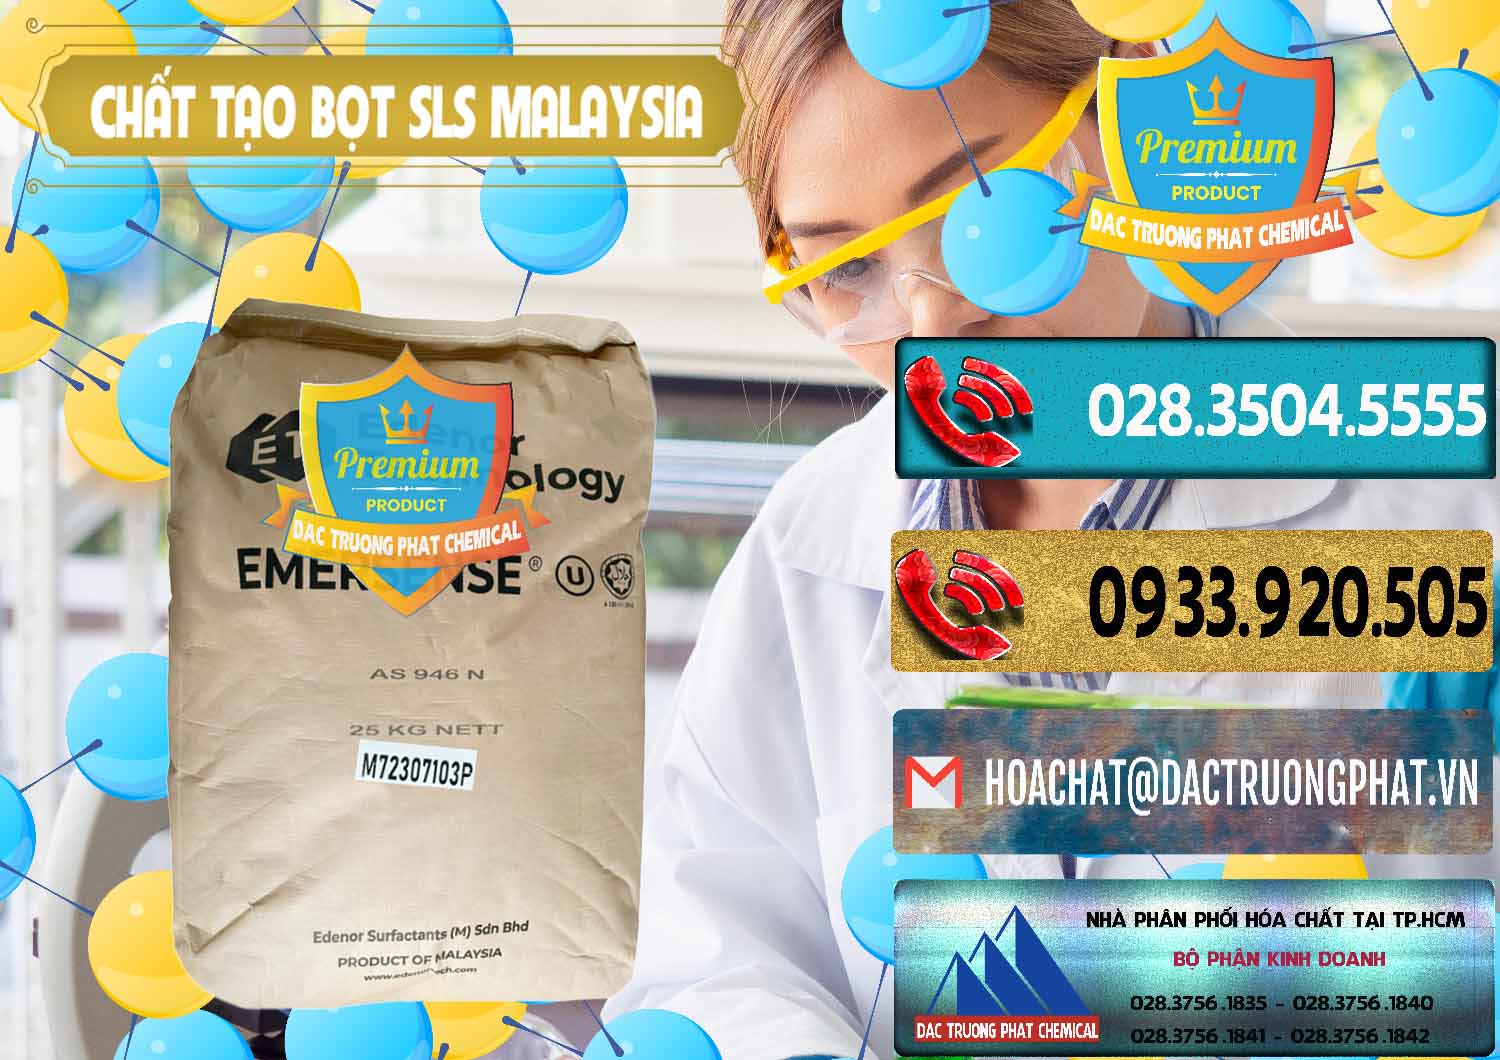 Cung cấp - bán Chất Tạo Bọt SLS Emersense Mã Lai Malaysia - 0381 - Đơn vị chuyên cung ứng và phân phối hóa chất tại TP.HCM - hoachatdetnhuom.com